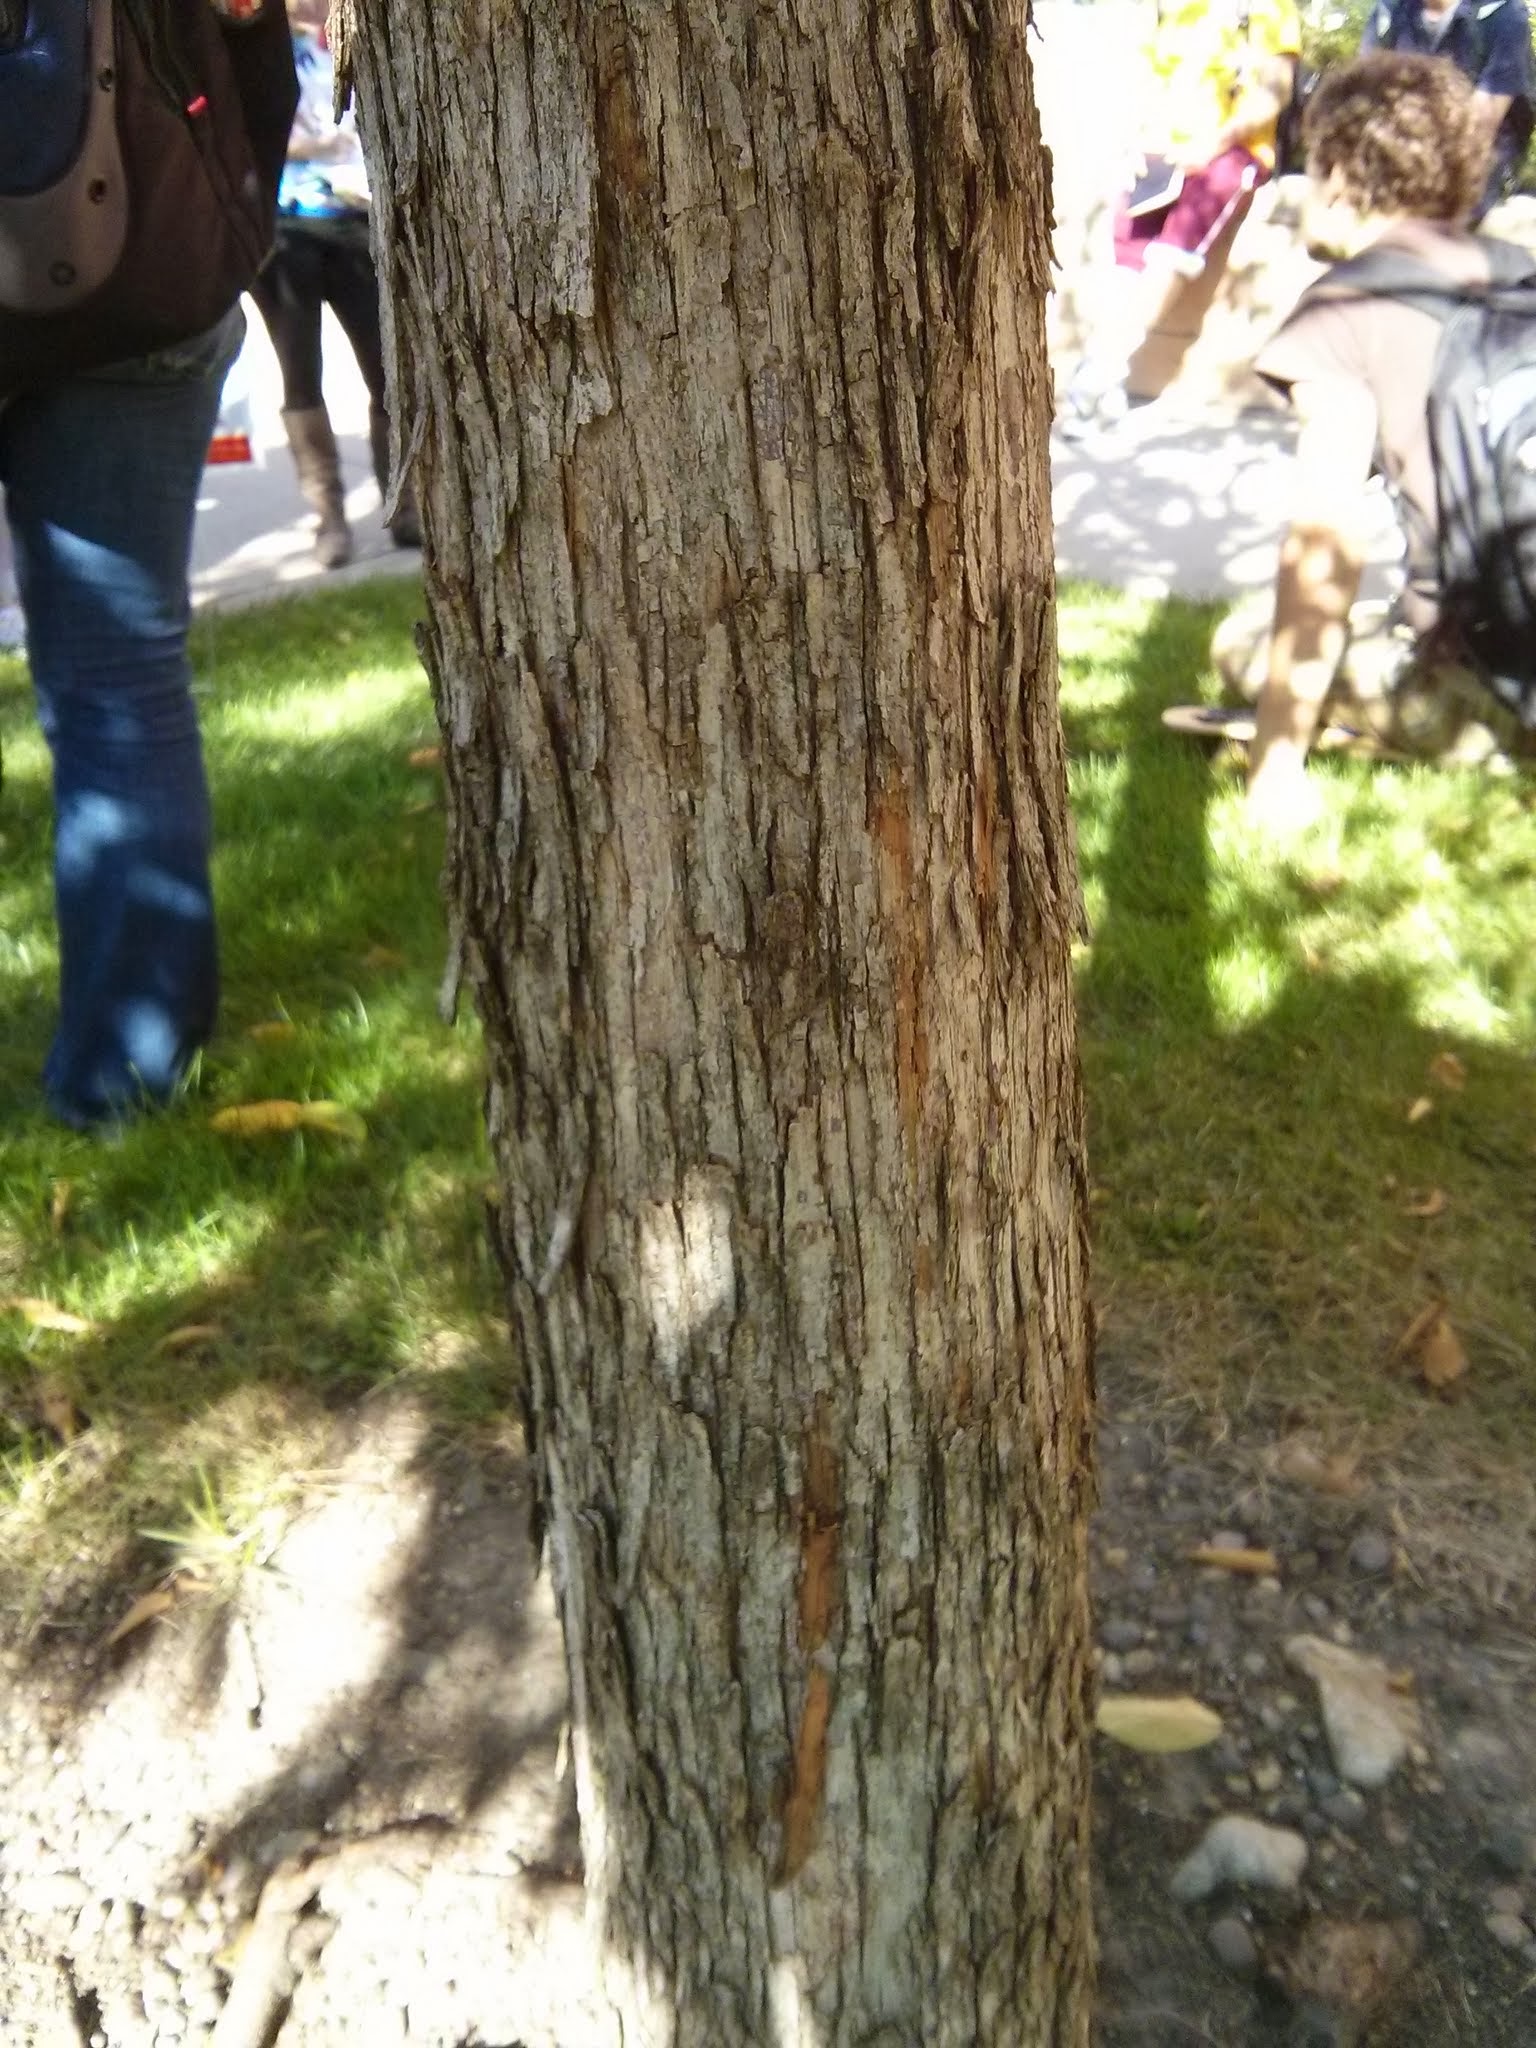 Ironwood bark